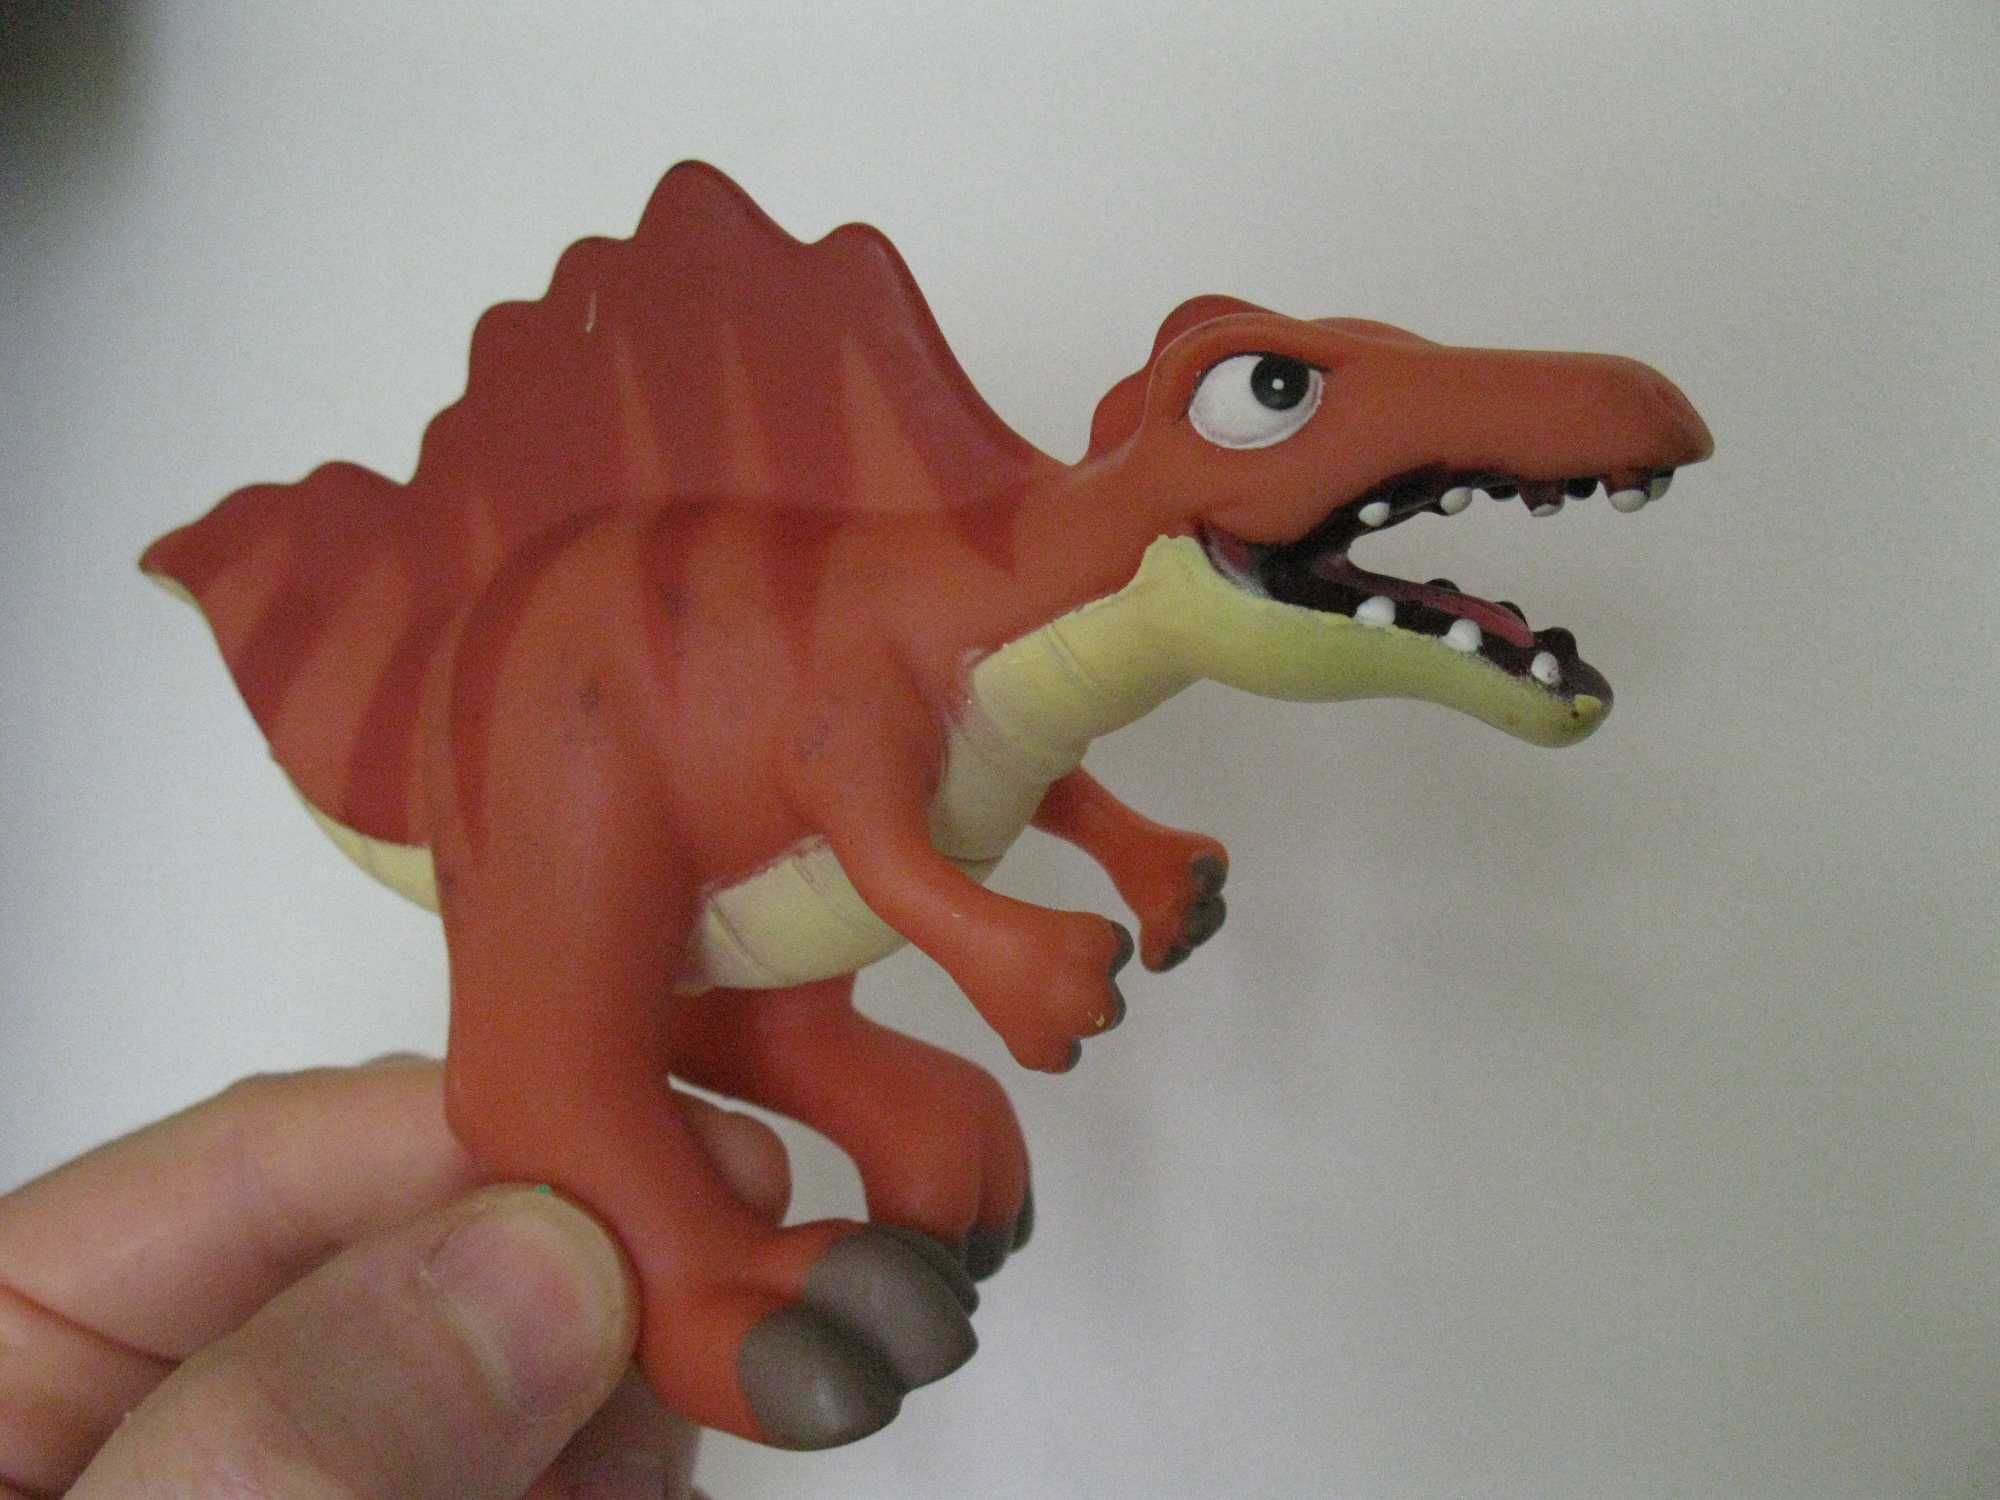 Фигурки Динозавры из Журнала "Динозавры и мир Юрского периода"